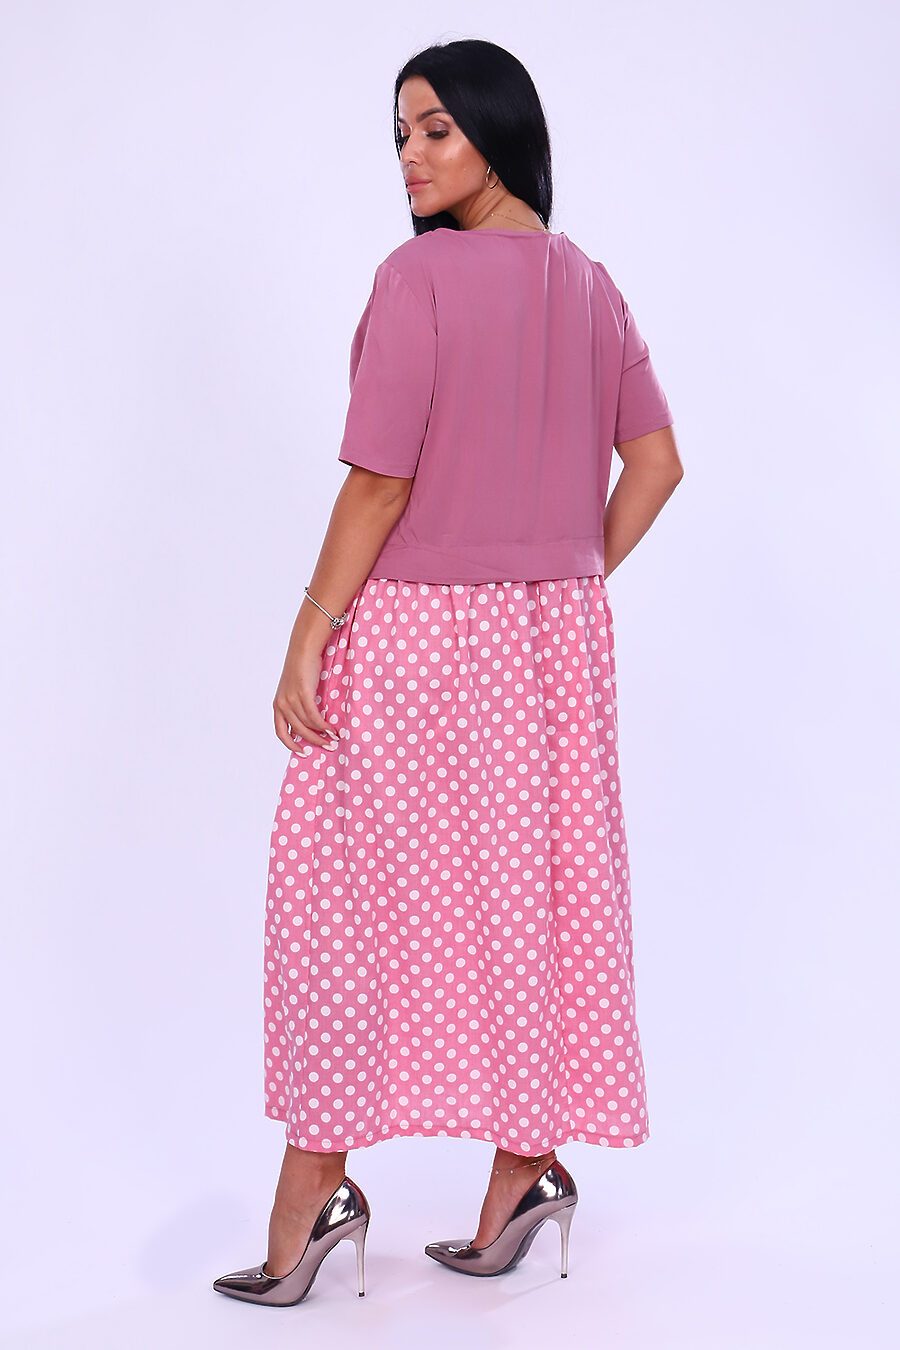 Платье 31685 для женщин НАТАЛИ 796335 купить оптом от производителя. Совместная покупка женской одежды в OptMoyo